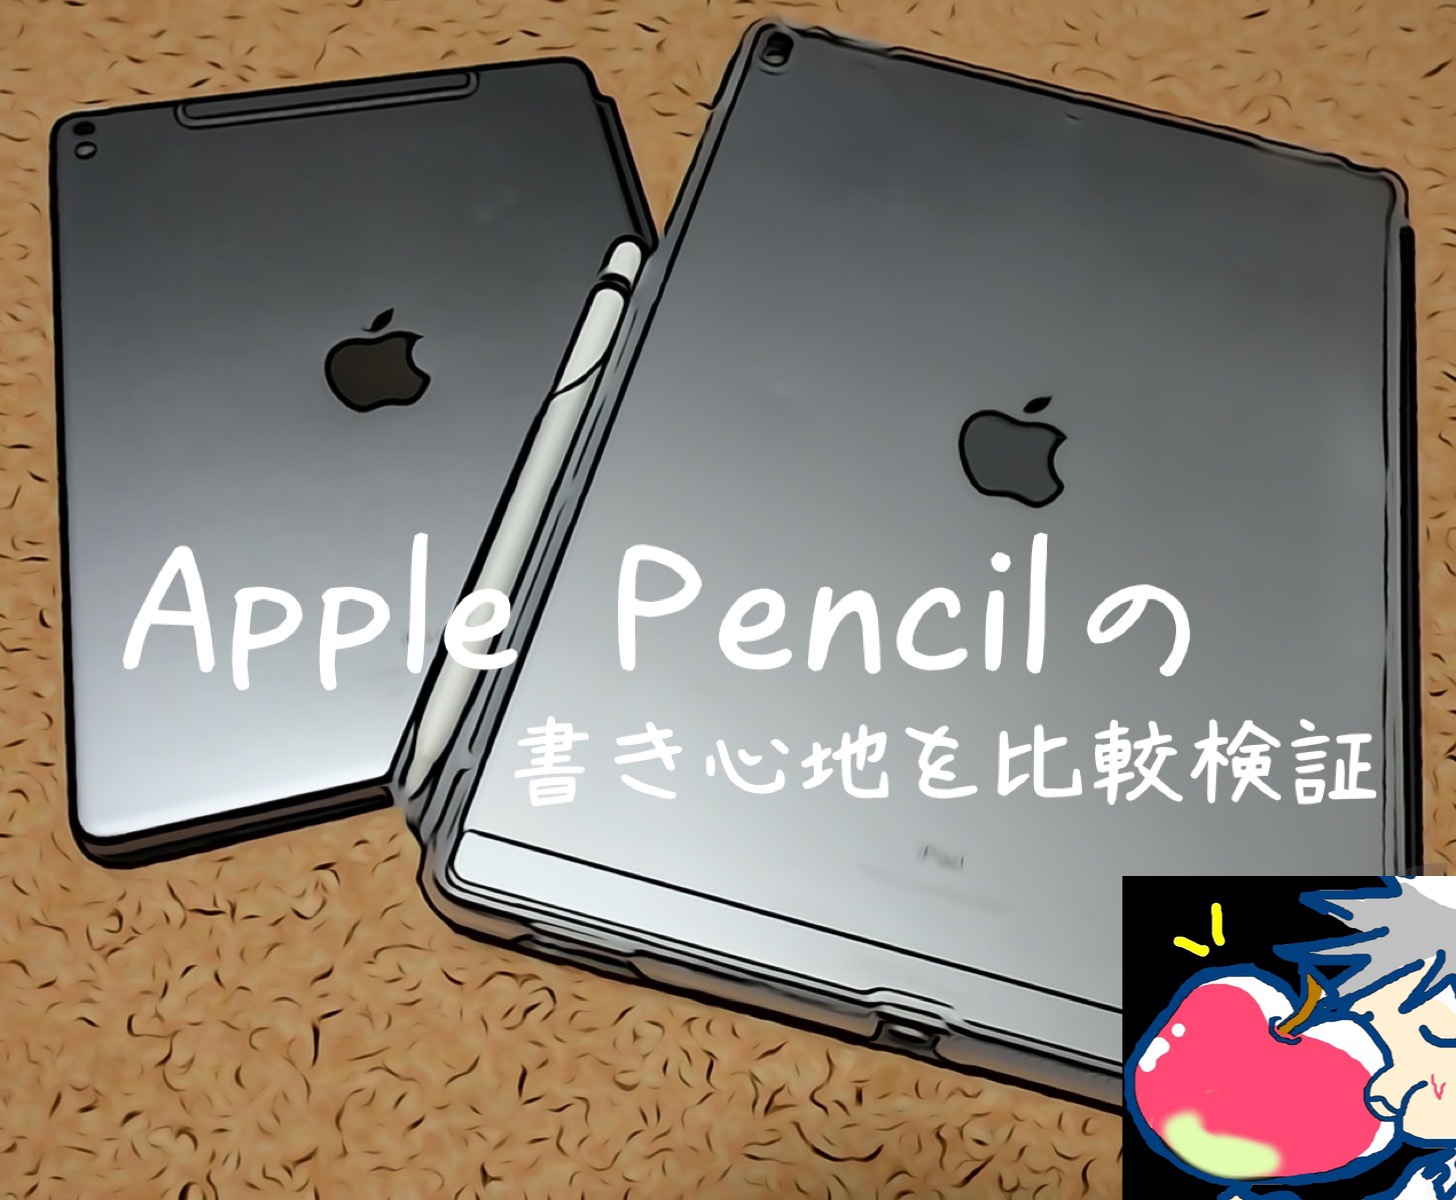 【レビュー】新型iPad(2018)とiPad ProはApple Pencilの書き心地が違うの？